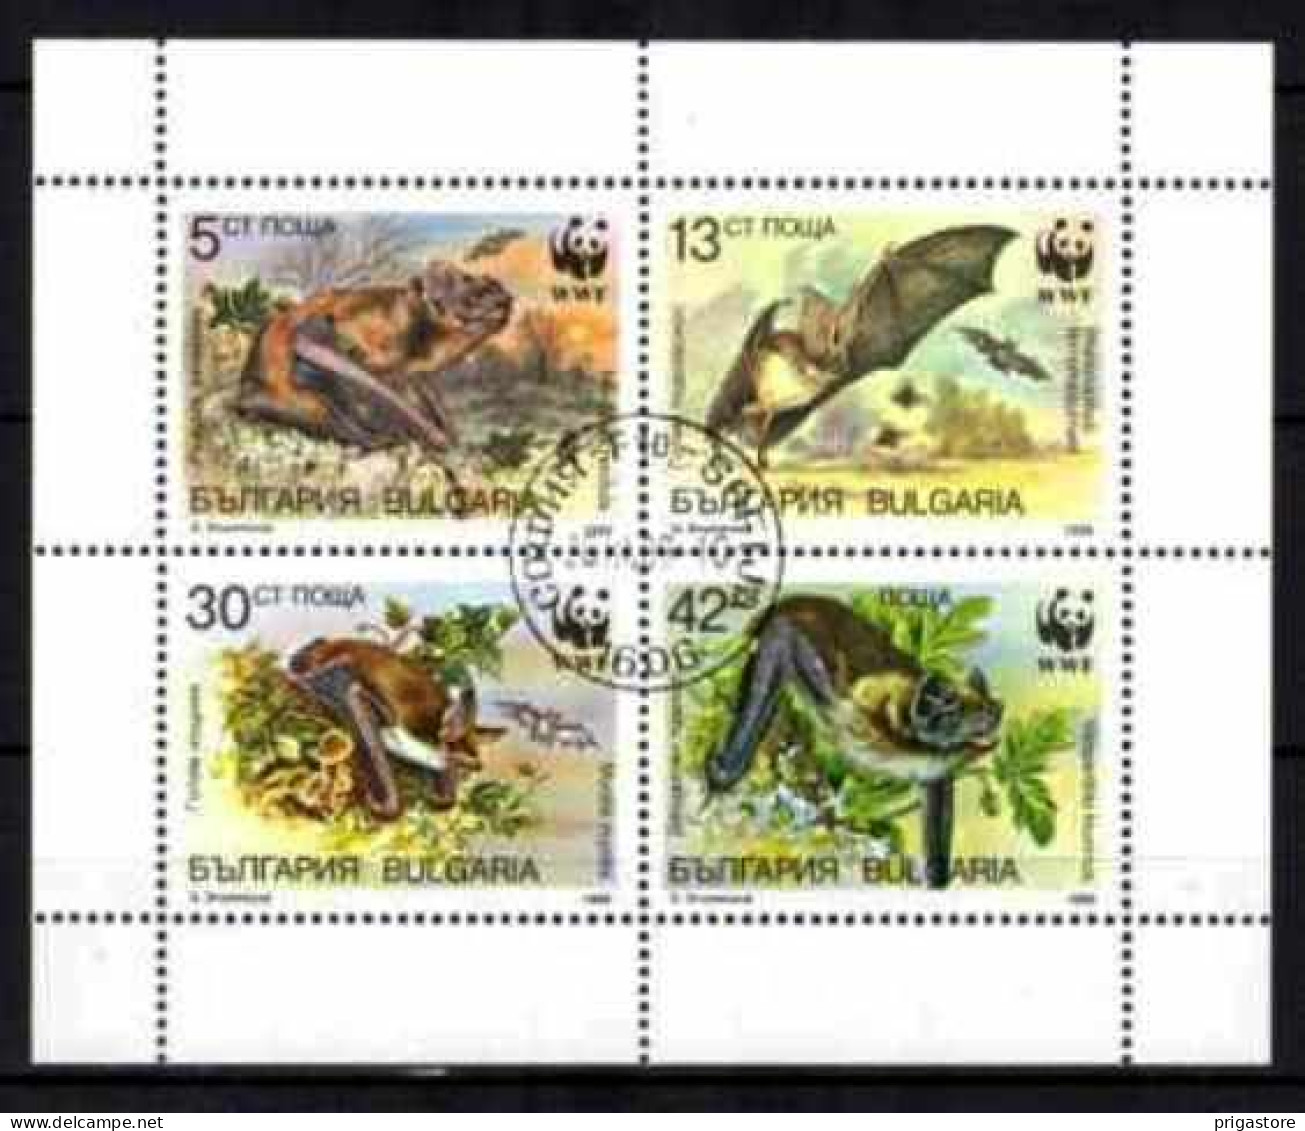 Animaux Chauve-Souris Bulgarie 1989 (55) Yvert N° 3231 à 3234 Oblitéré Used - Fledermäuse